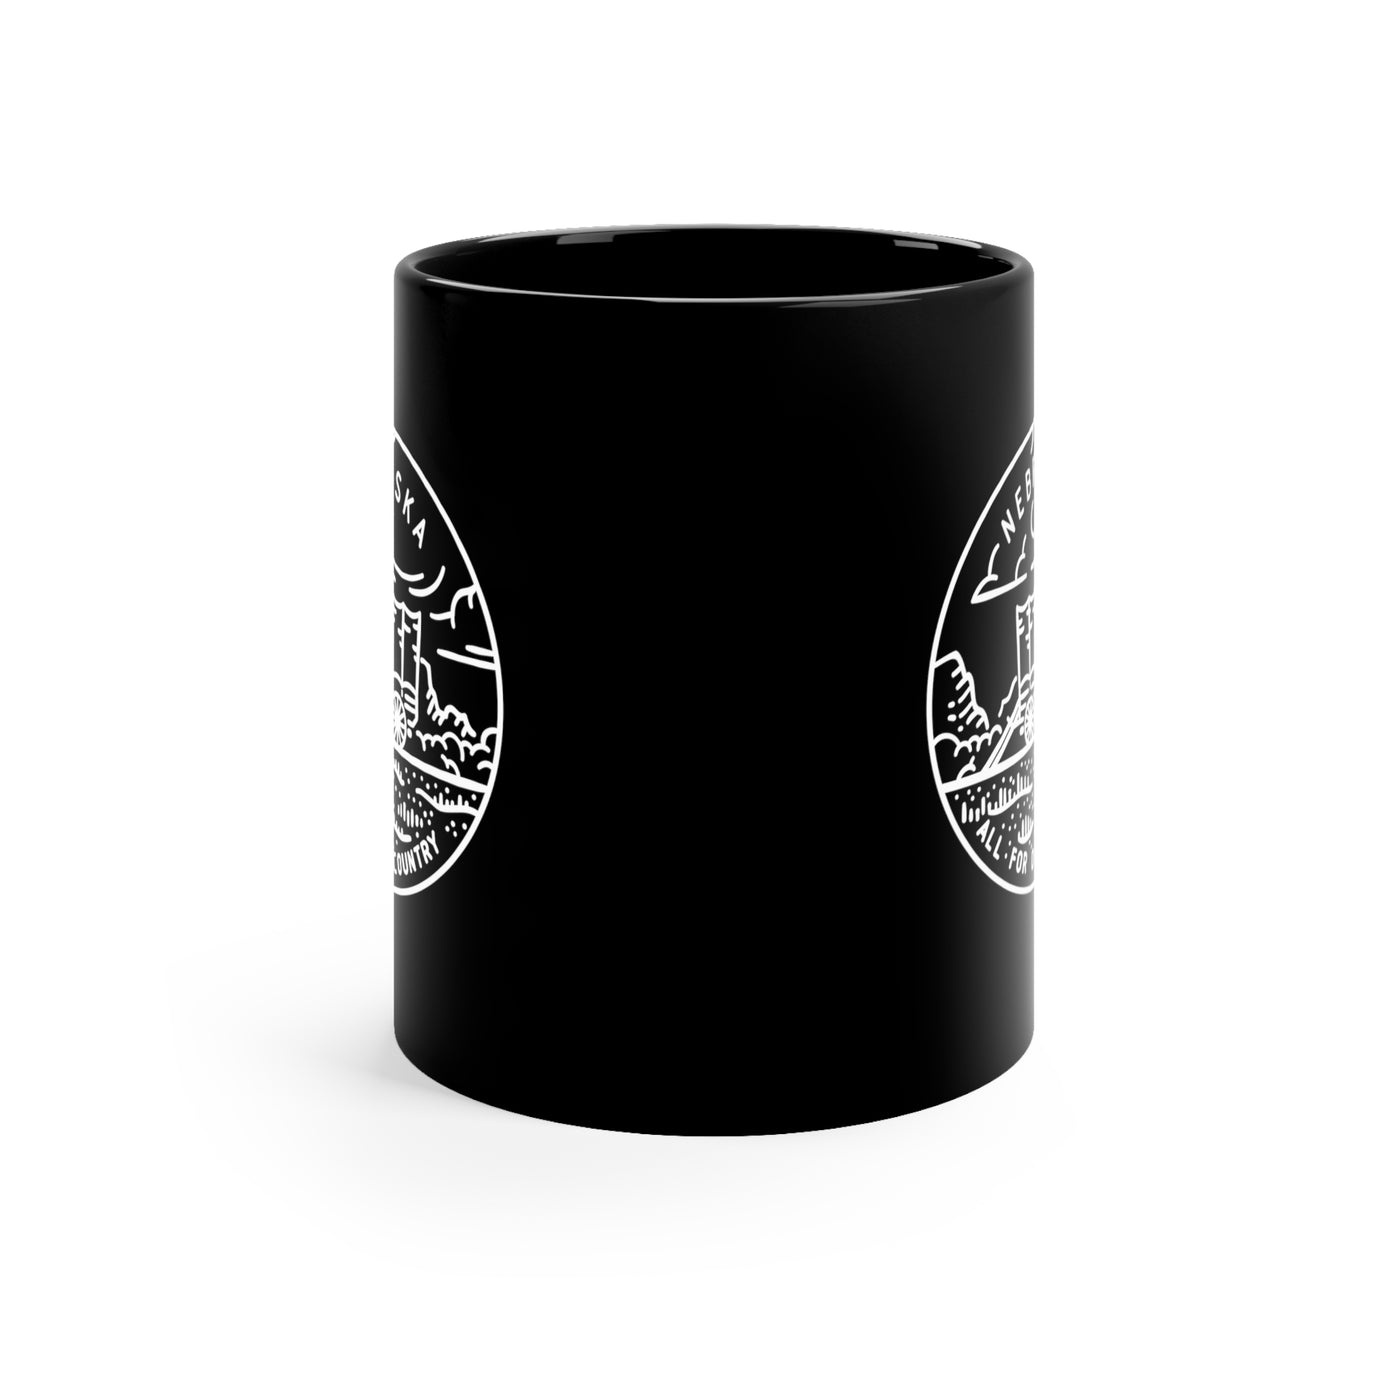 Nebraska State Motto Ceramic Mug